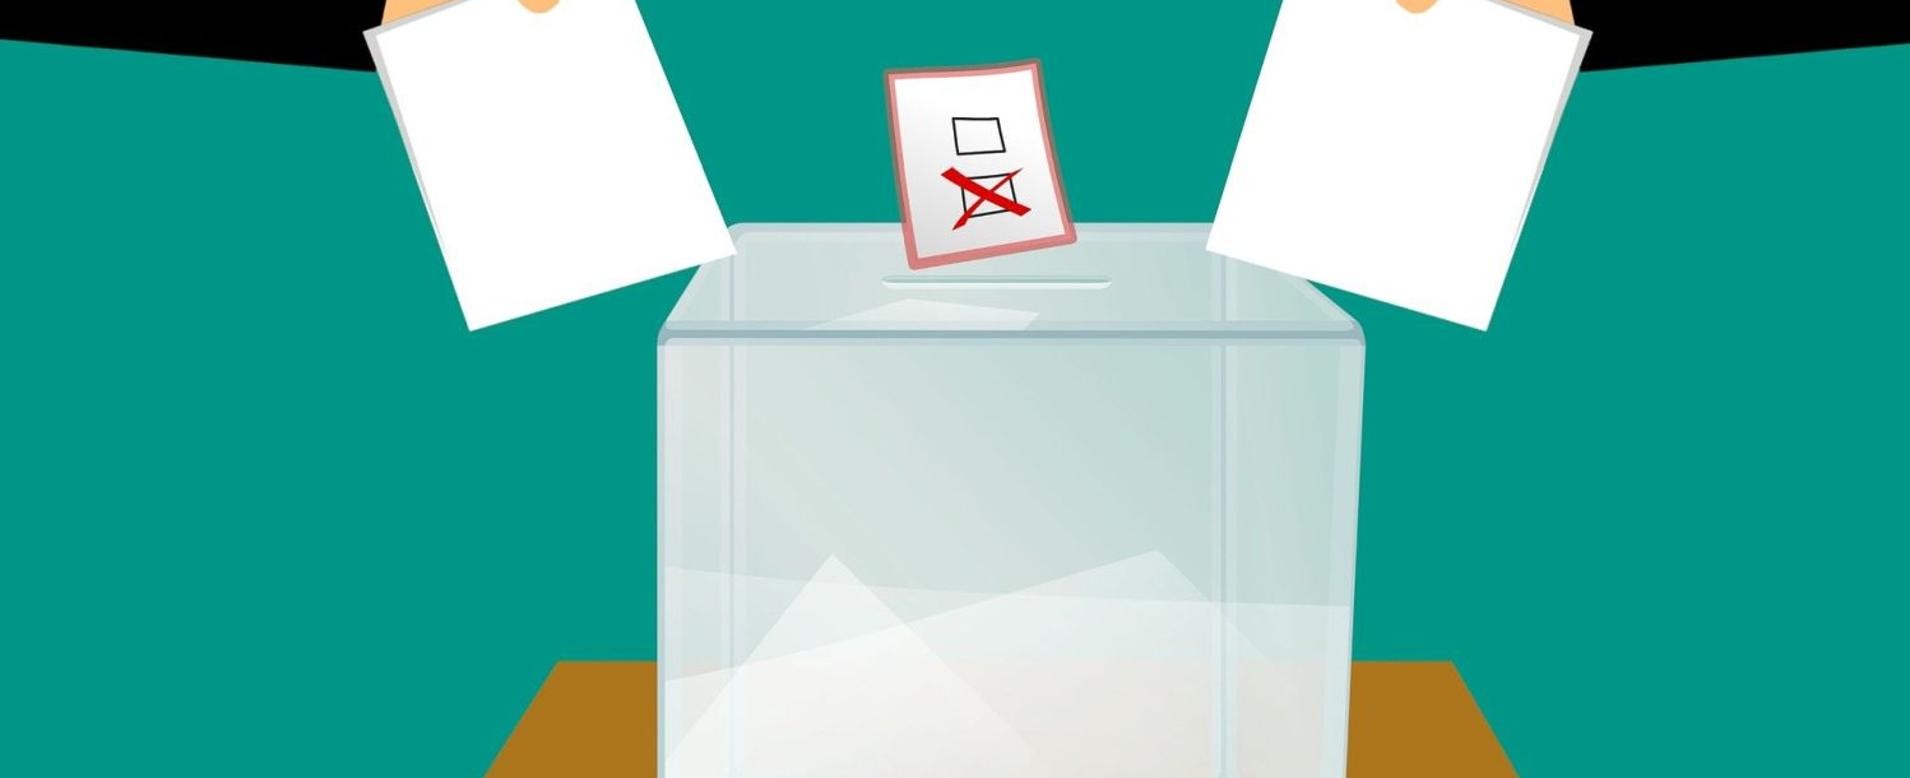 Grafik zwei Hände werfen Unterlagen in eine Wahlurne.